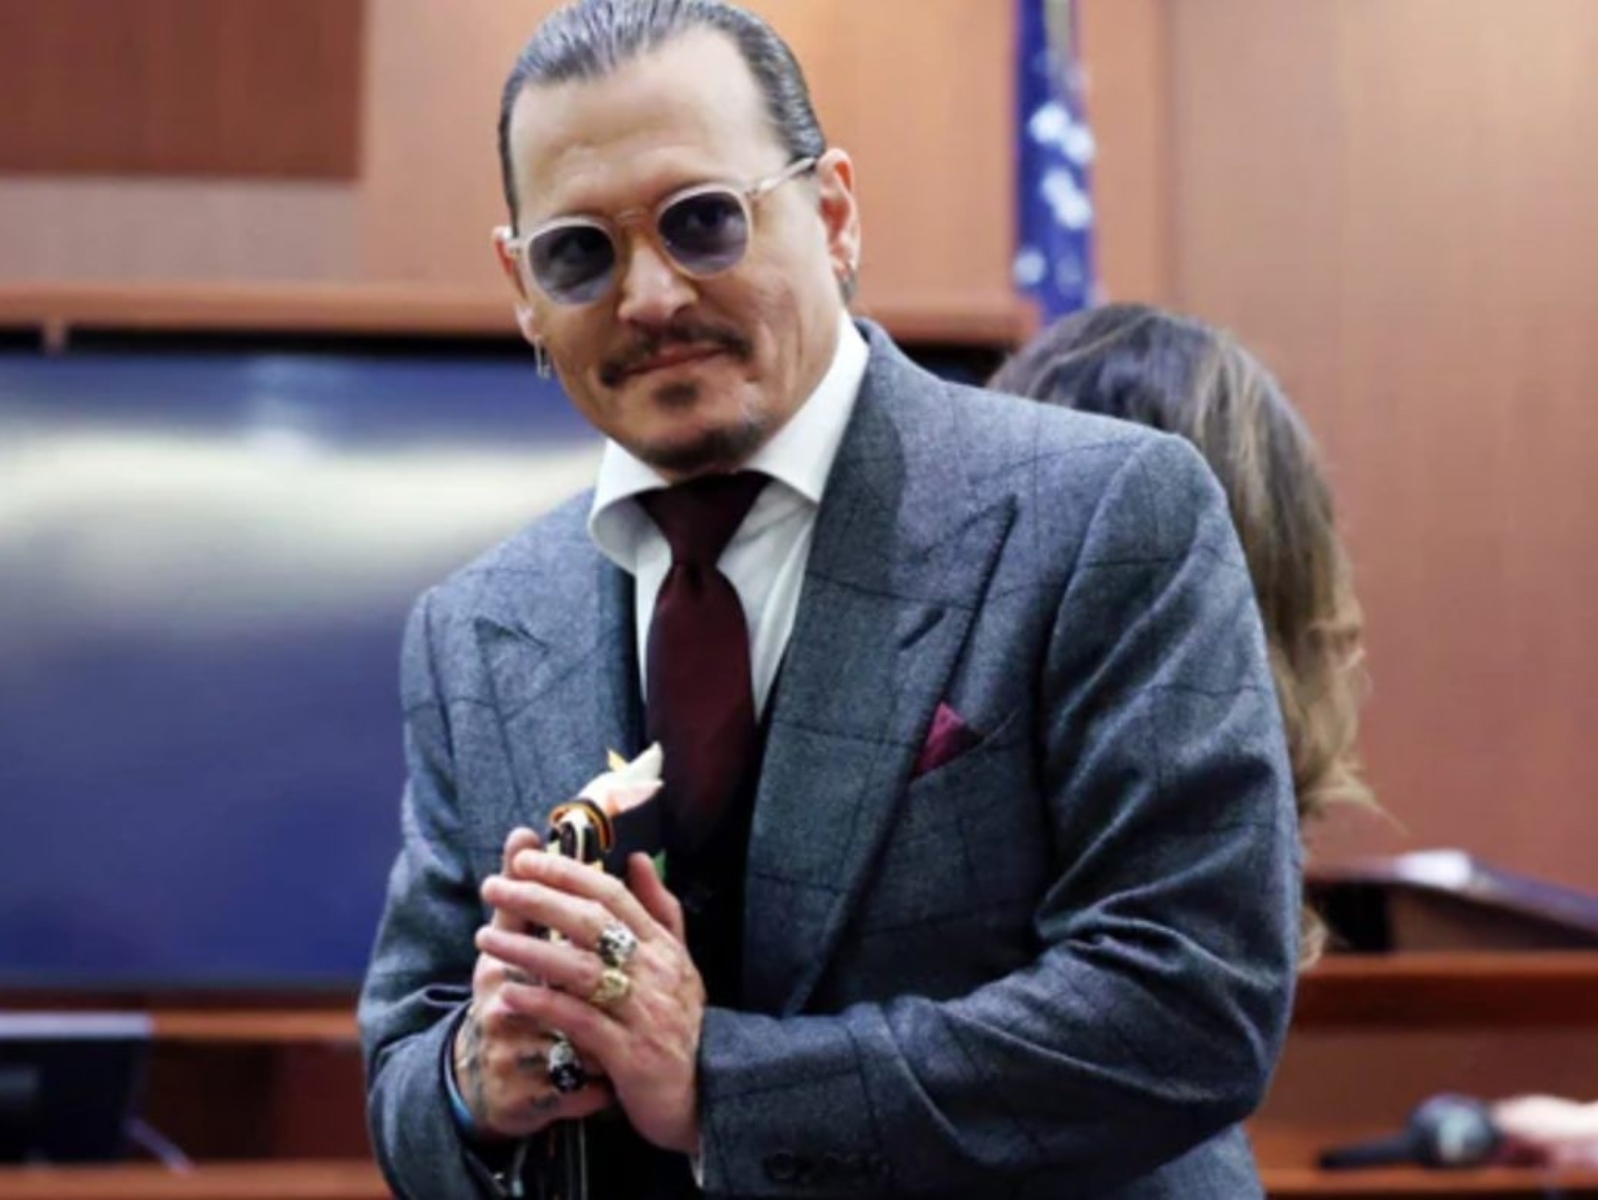 強尼戴普 Johnny Depp 因站上法庭短短一週 IG 新增 400 萬粉絲！